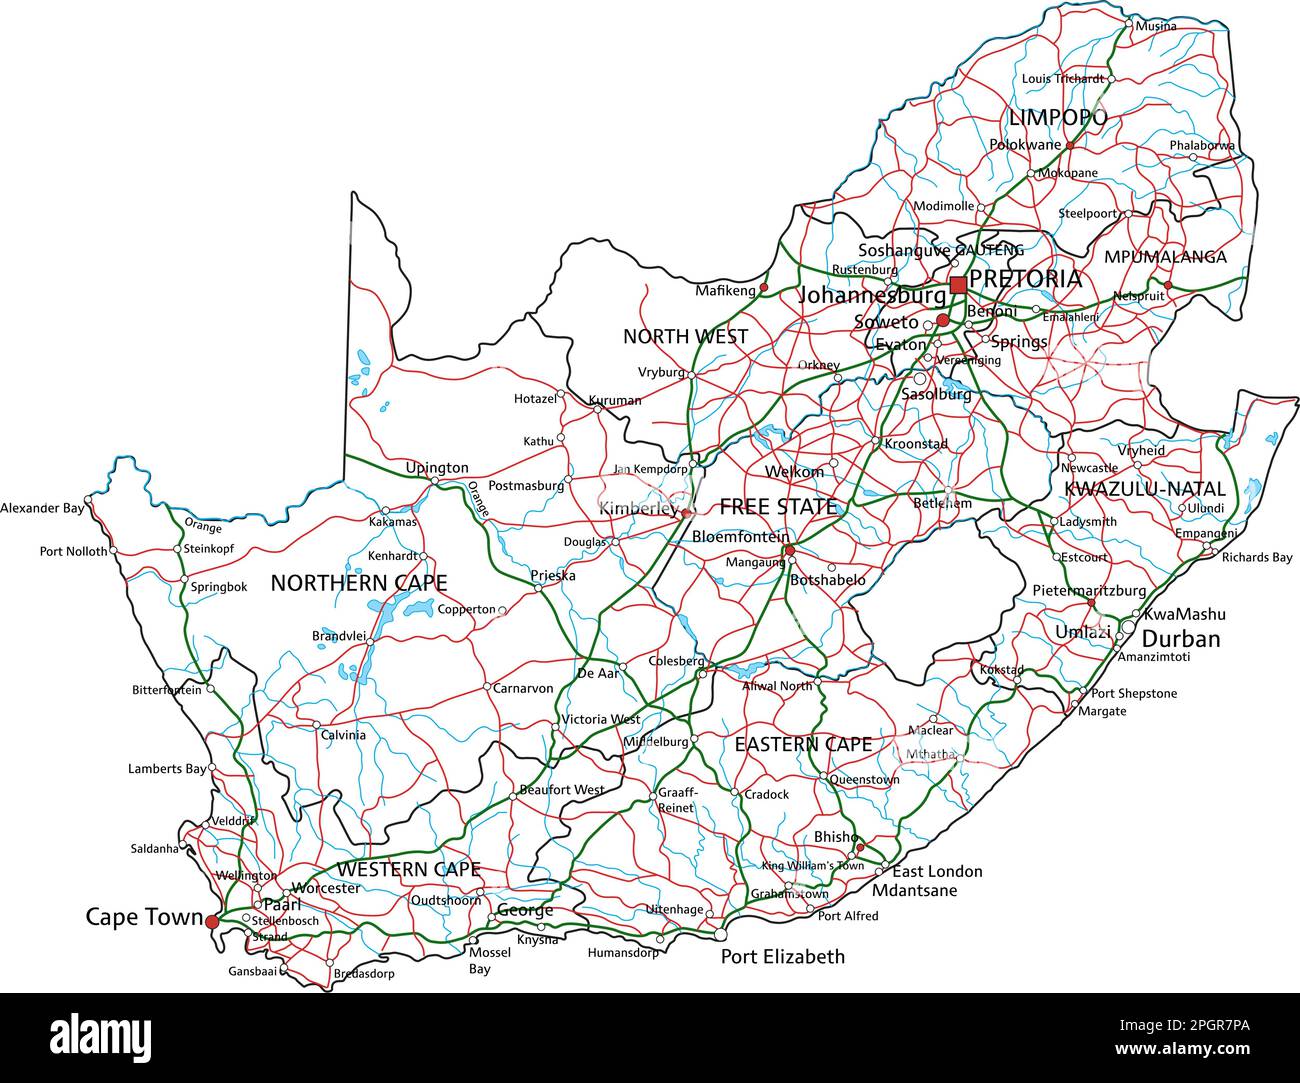 Detaillierte Südafrikanische Straßenkarte mit Kennzeichnung. Stock Vektor